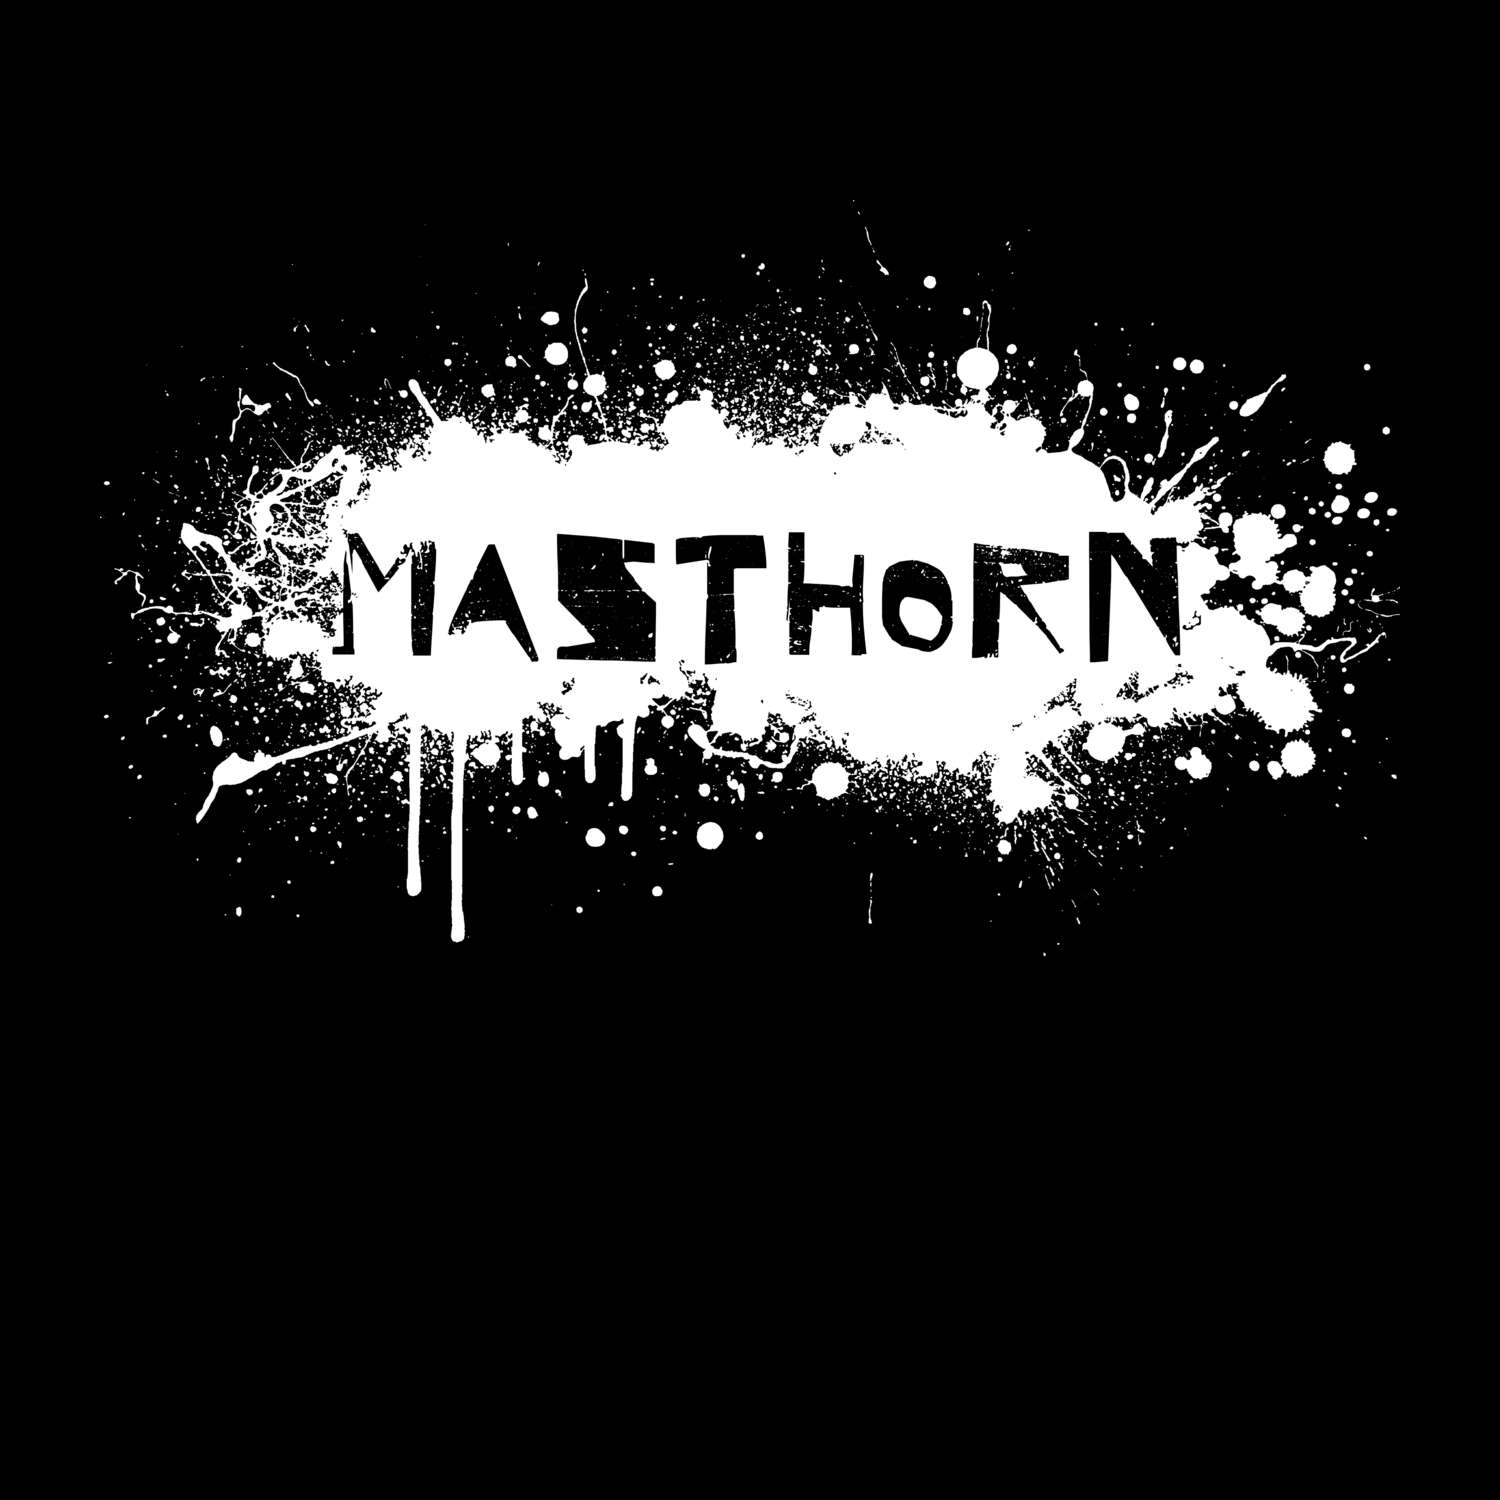 Masthorn T-Shirt »Paint Splash Punk«